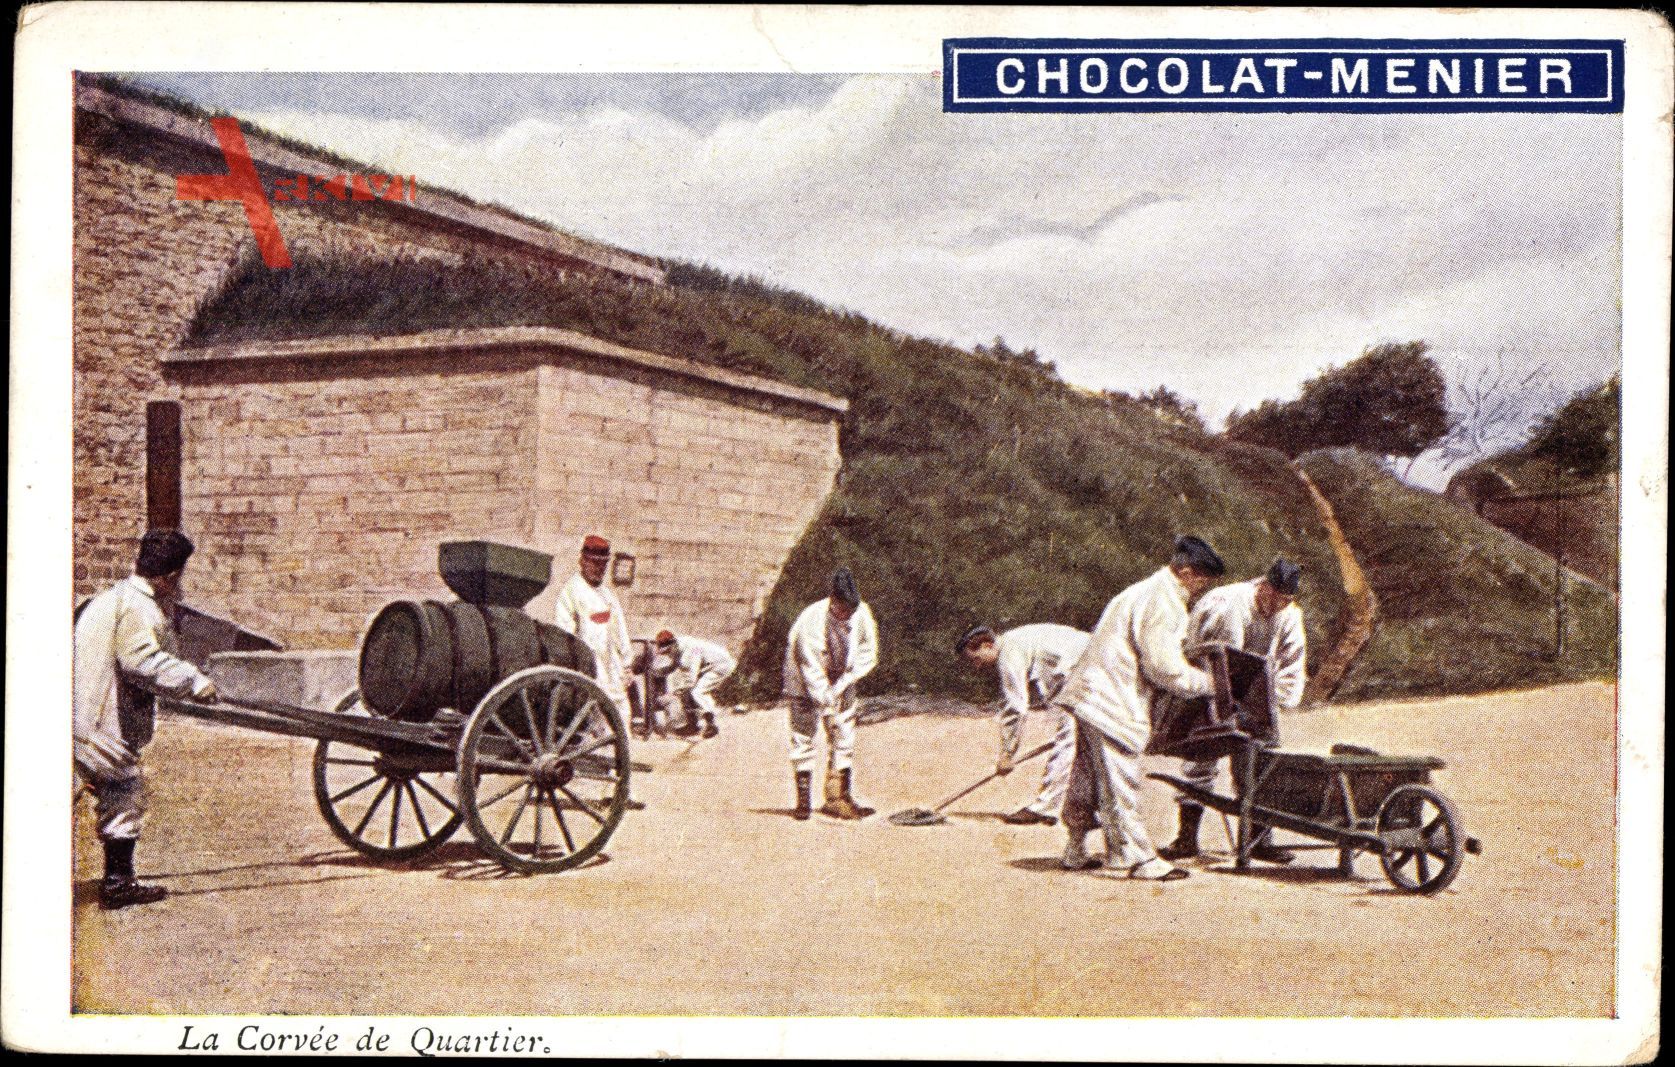 La Corvée de Quartier, Soldaten bei der Arbeit, Chocolat Menier